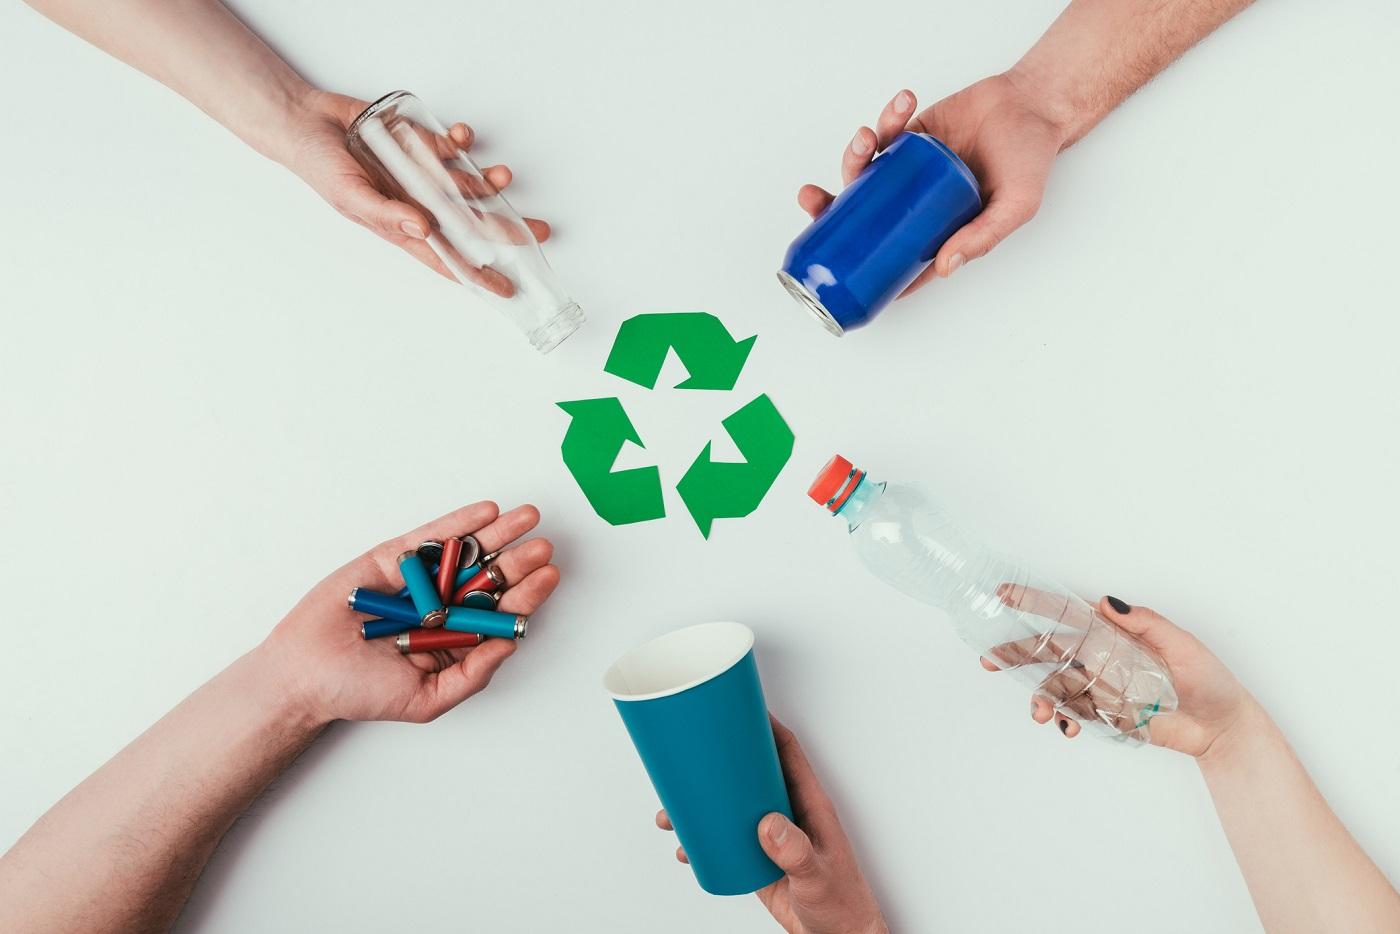 materiały, które można poddawać recyklingowi